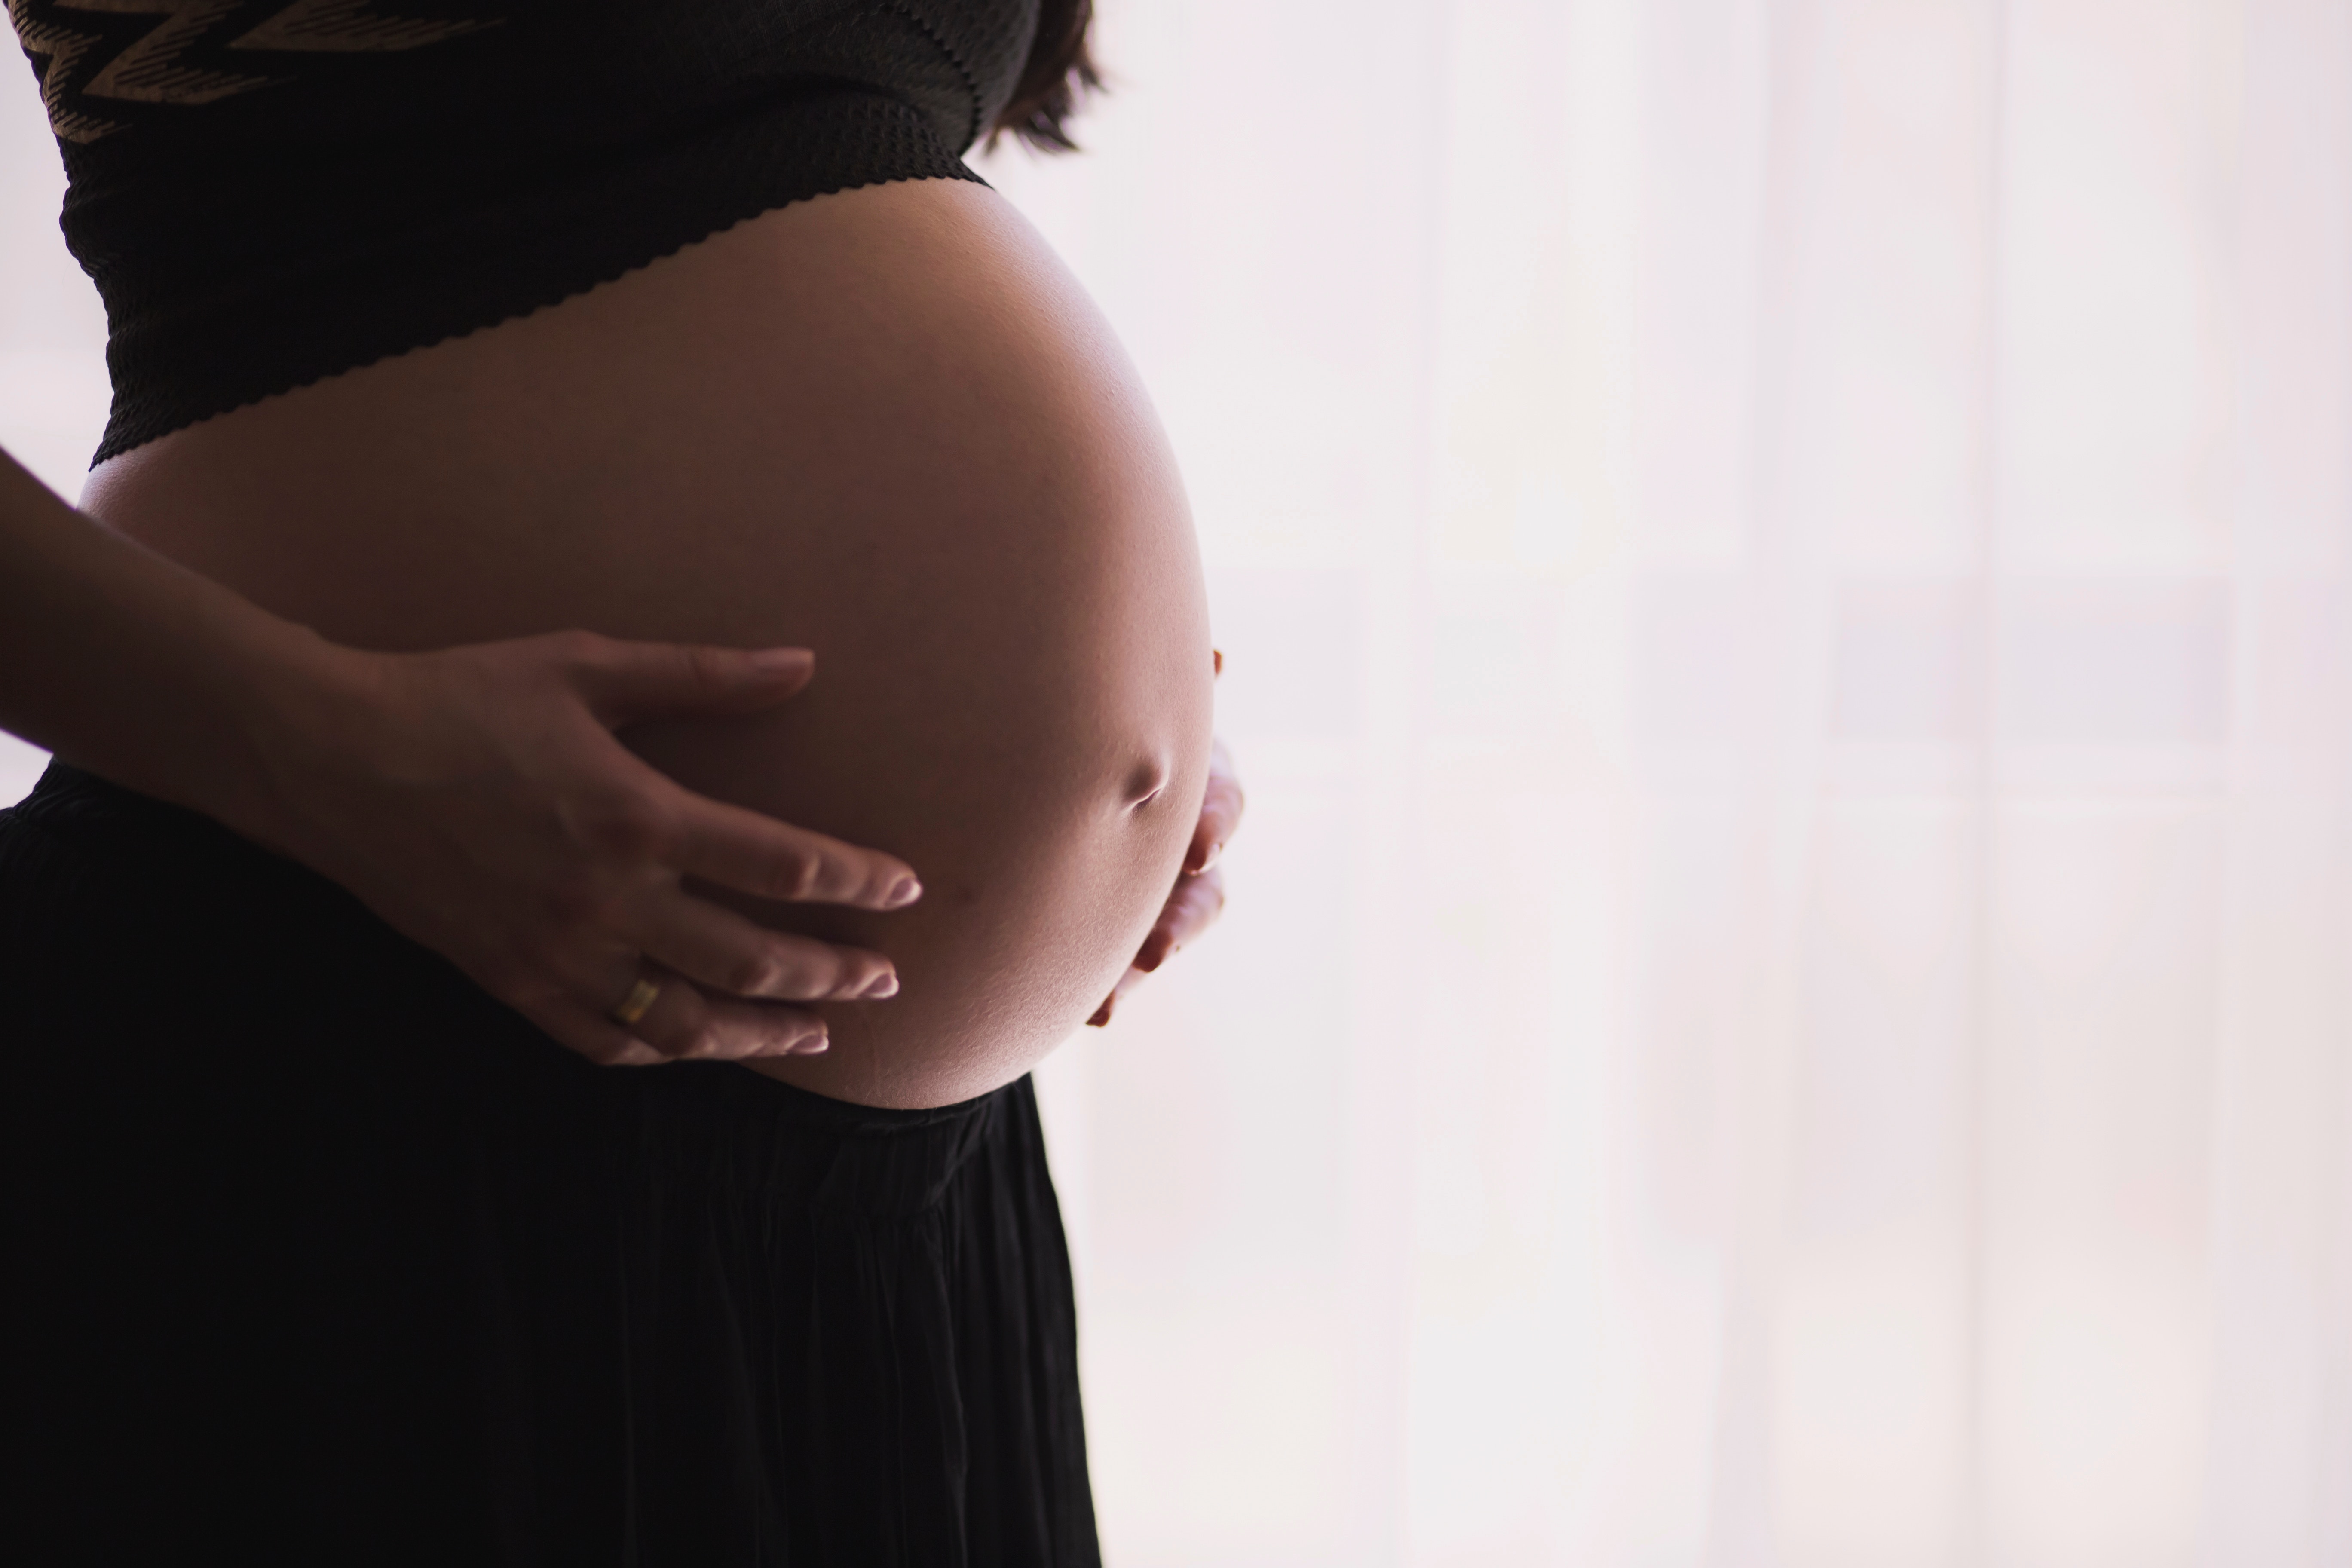 häufig leiden Frauen unter Blasenschwäche nach der Schwangerschaft